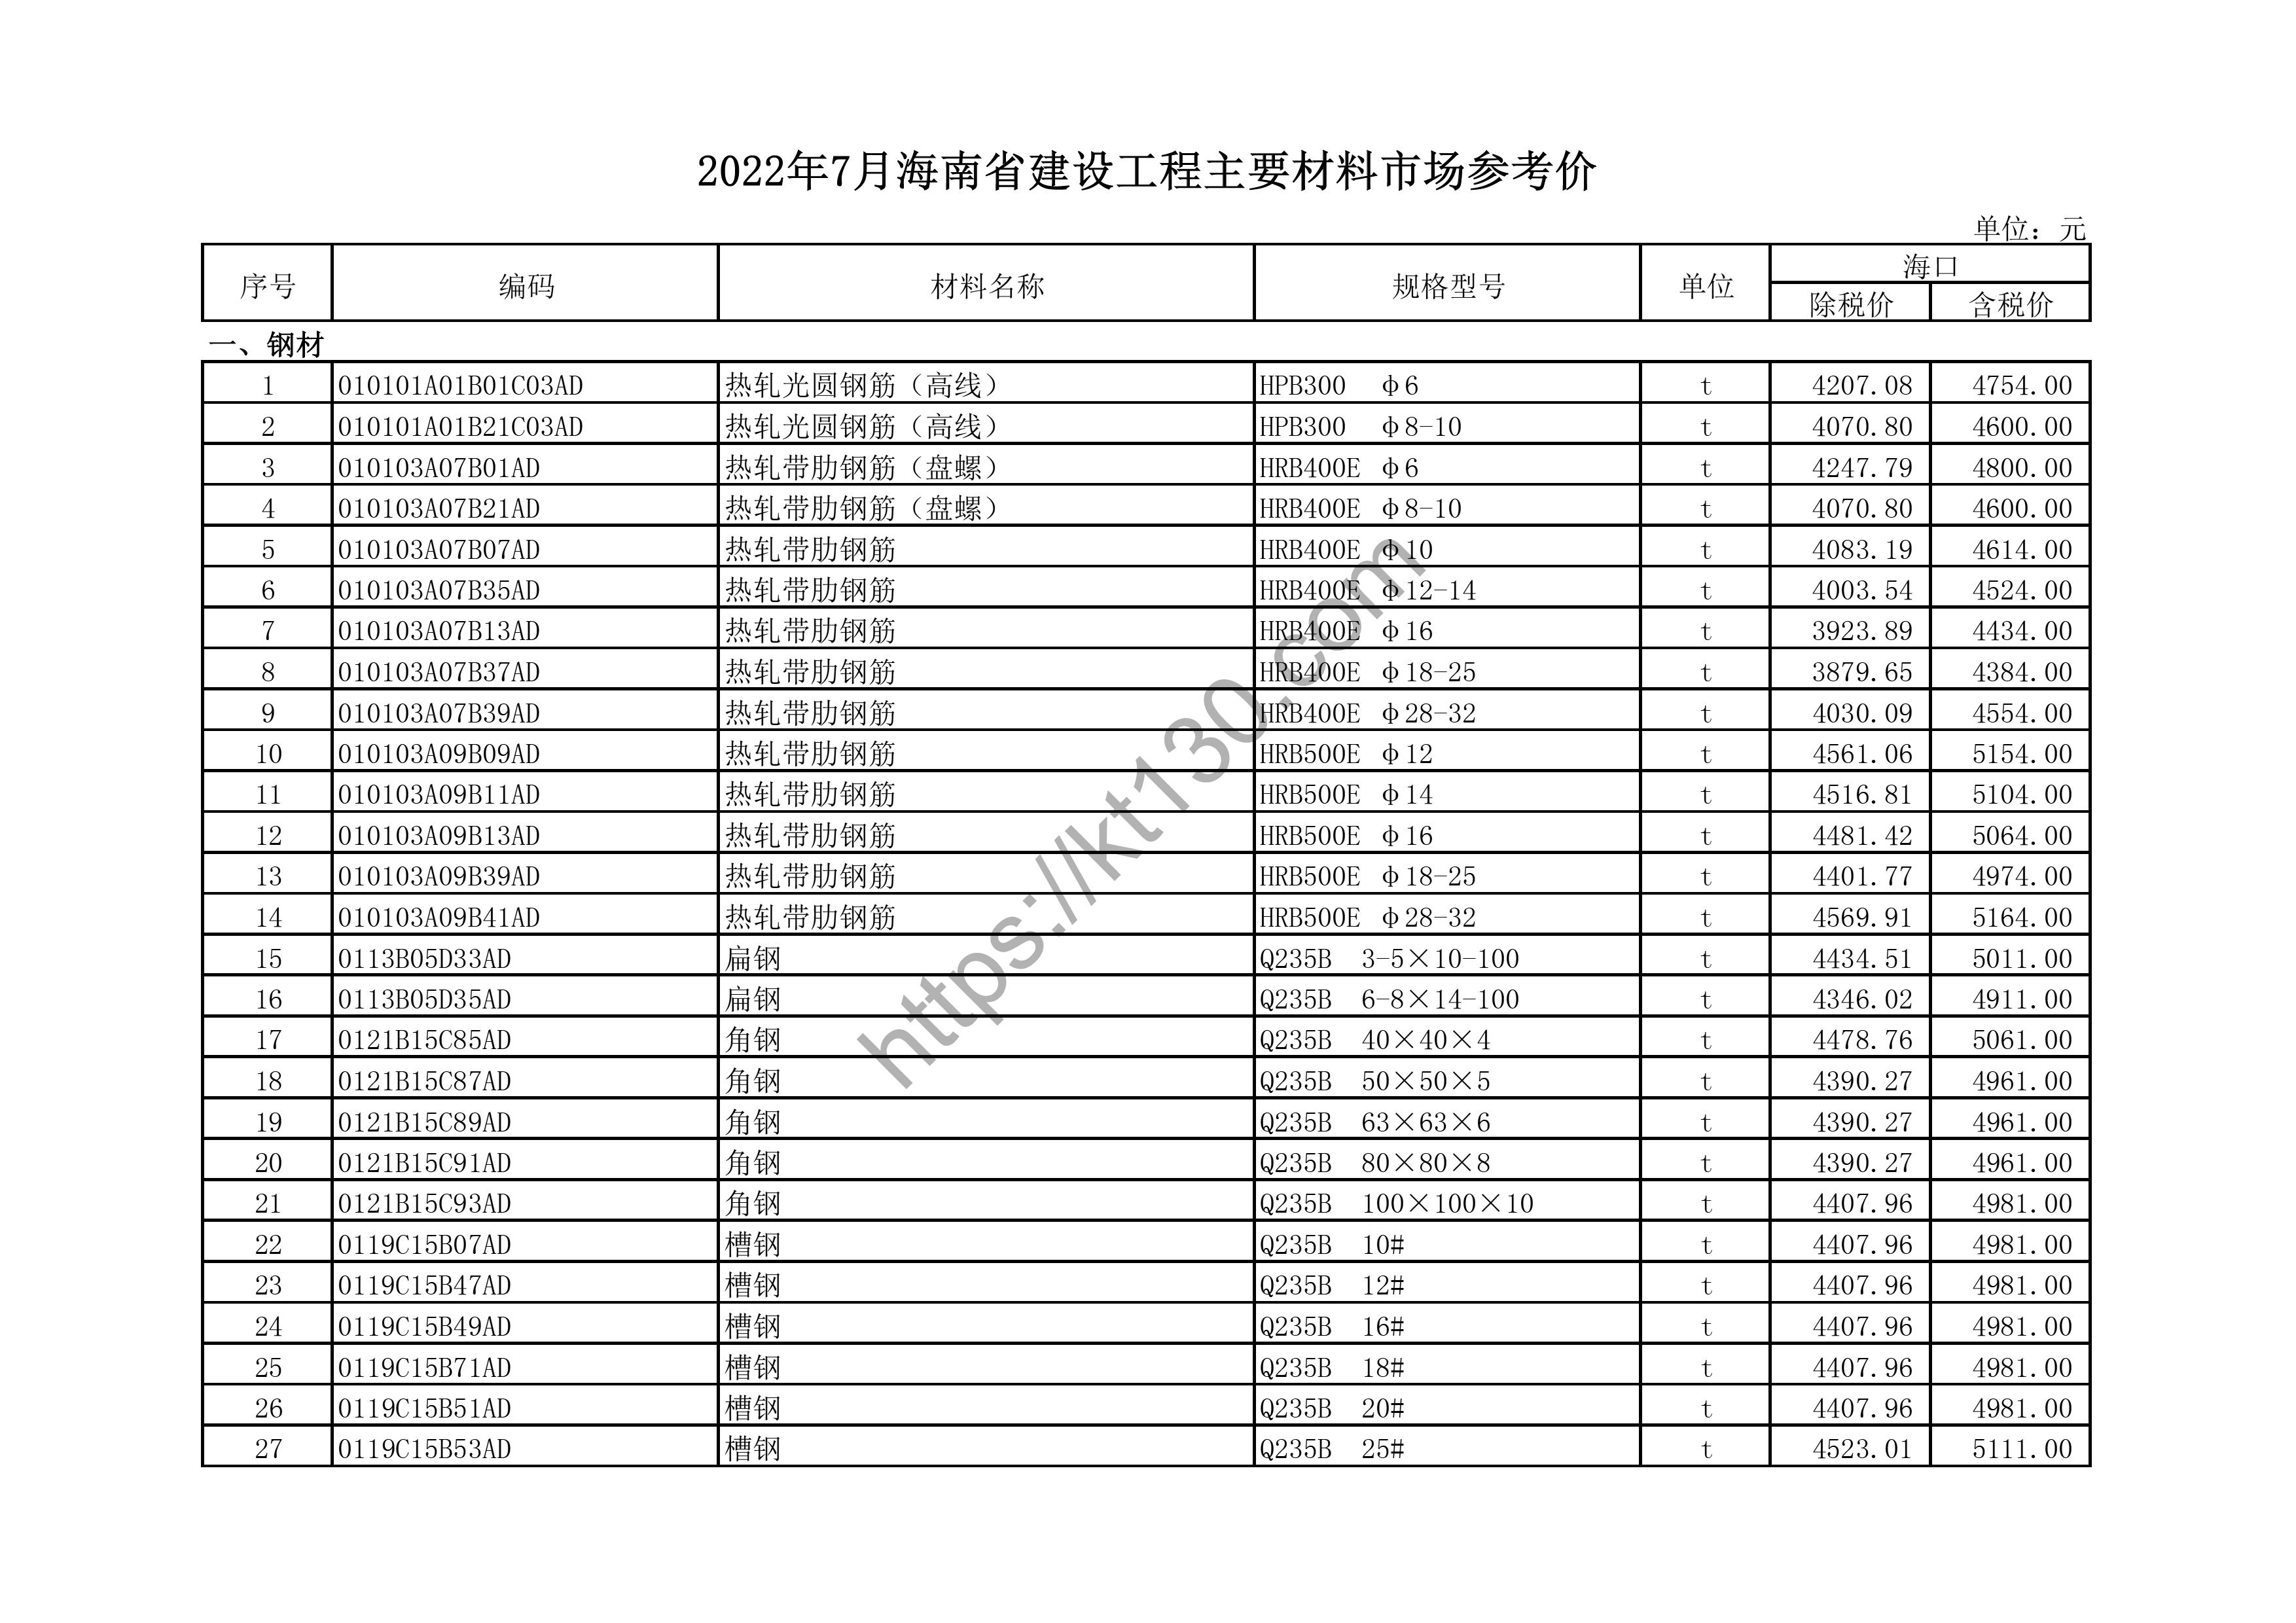 海南省2022年7月建筑材料价_黑色及有色金属_44734